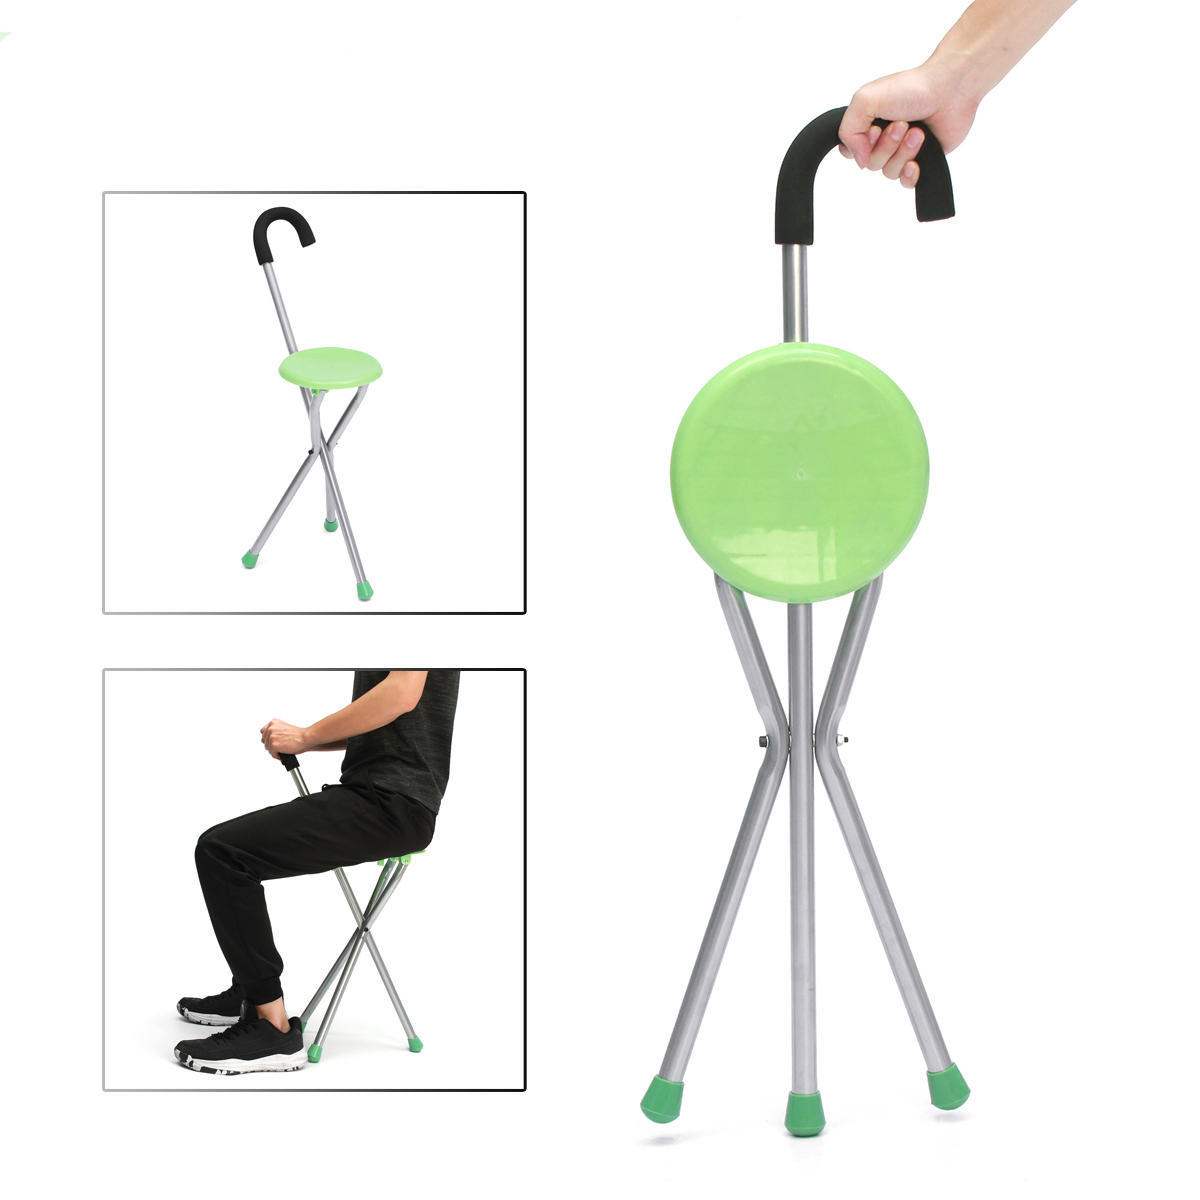 Cadeira portátil dobrável para camping com tripé, bengala e assento para caminhar, carga máxima de 130 kg